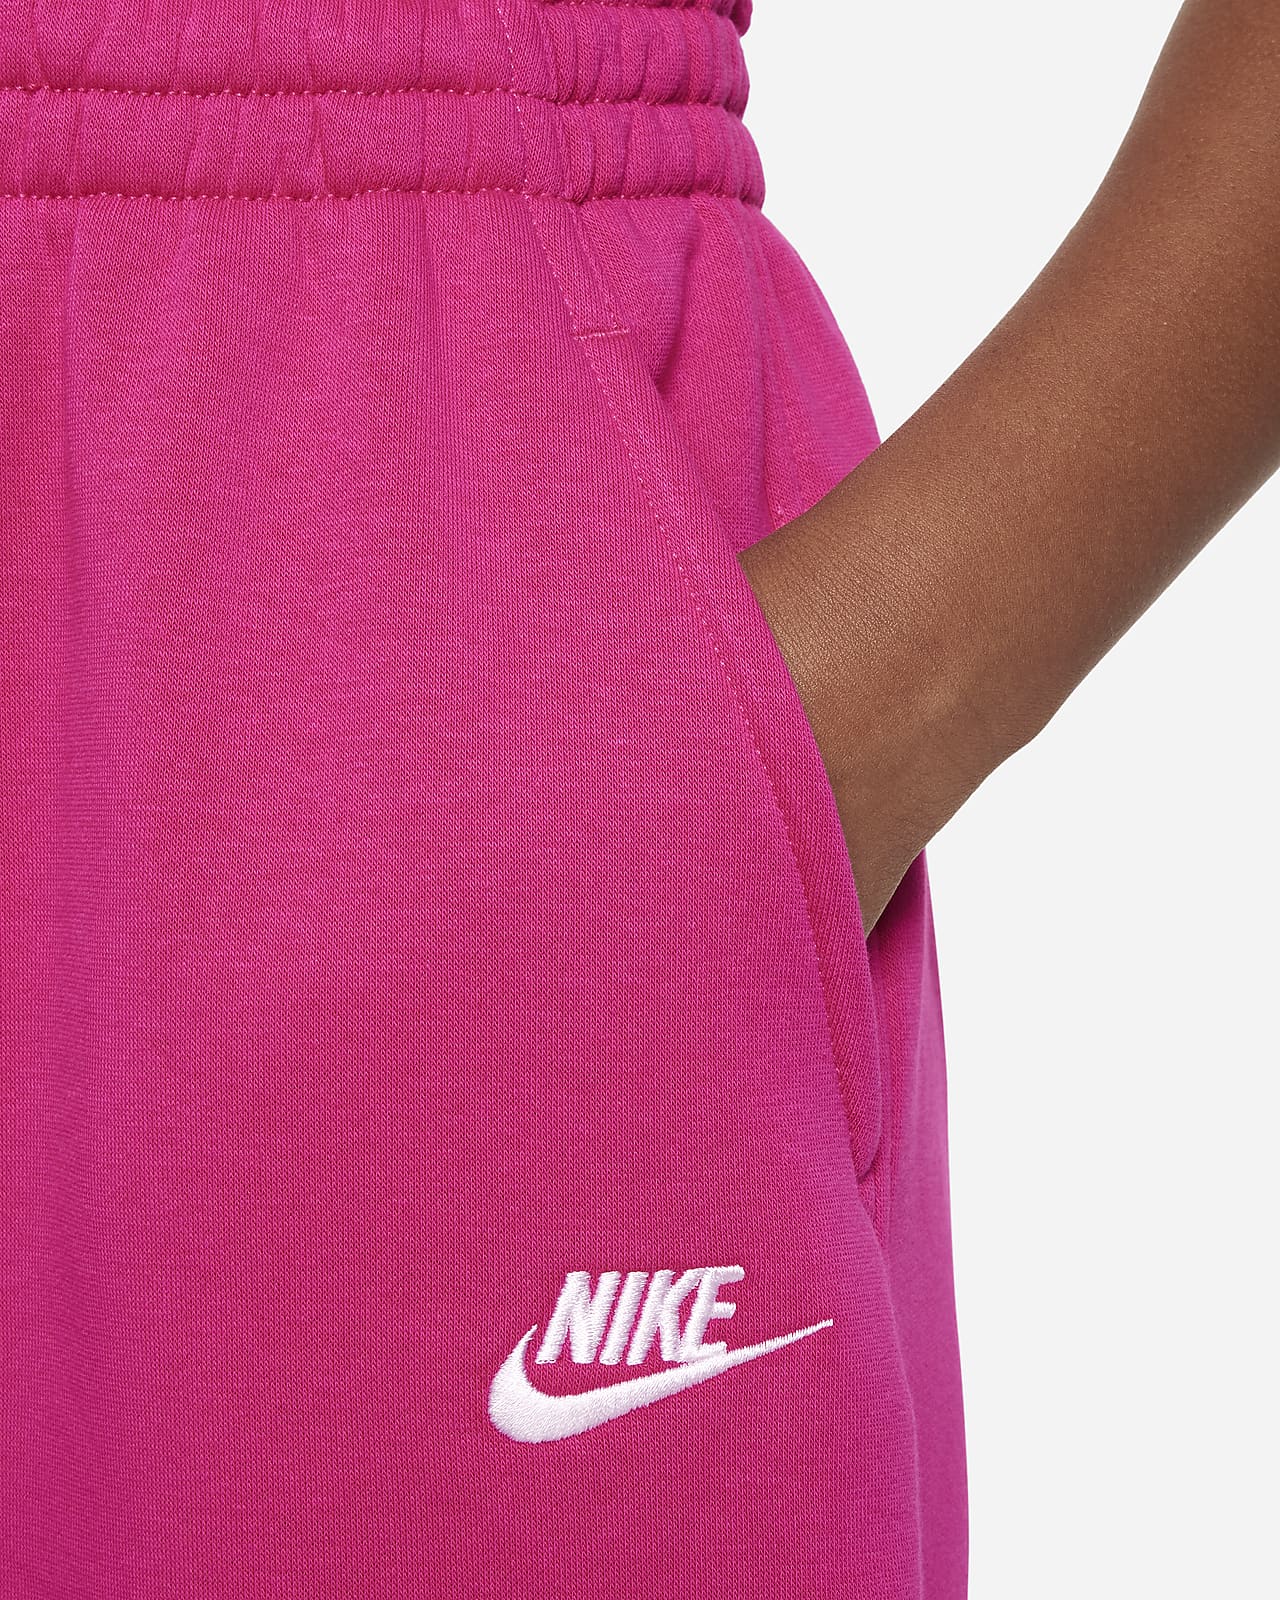 NIKE Sportswear Club Womens Oversized Fleece Sweatpants - HEATHER